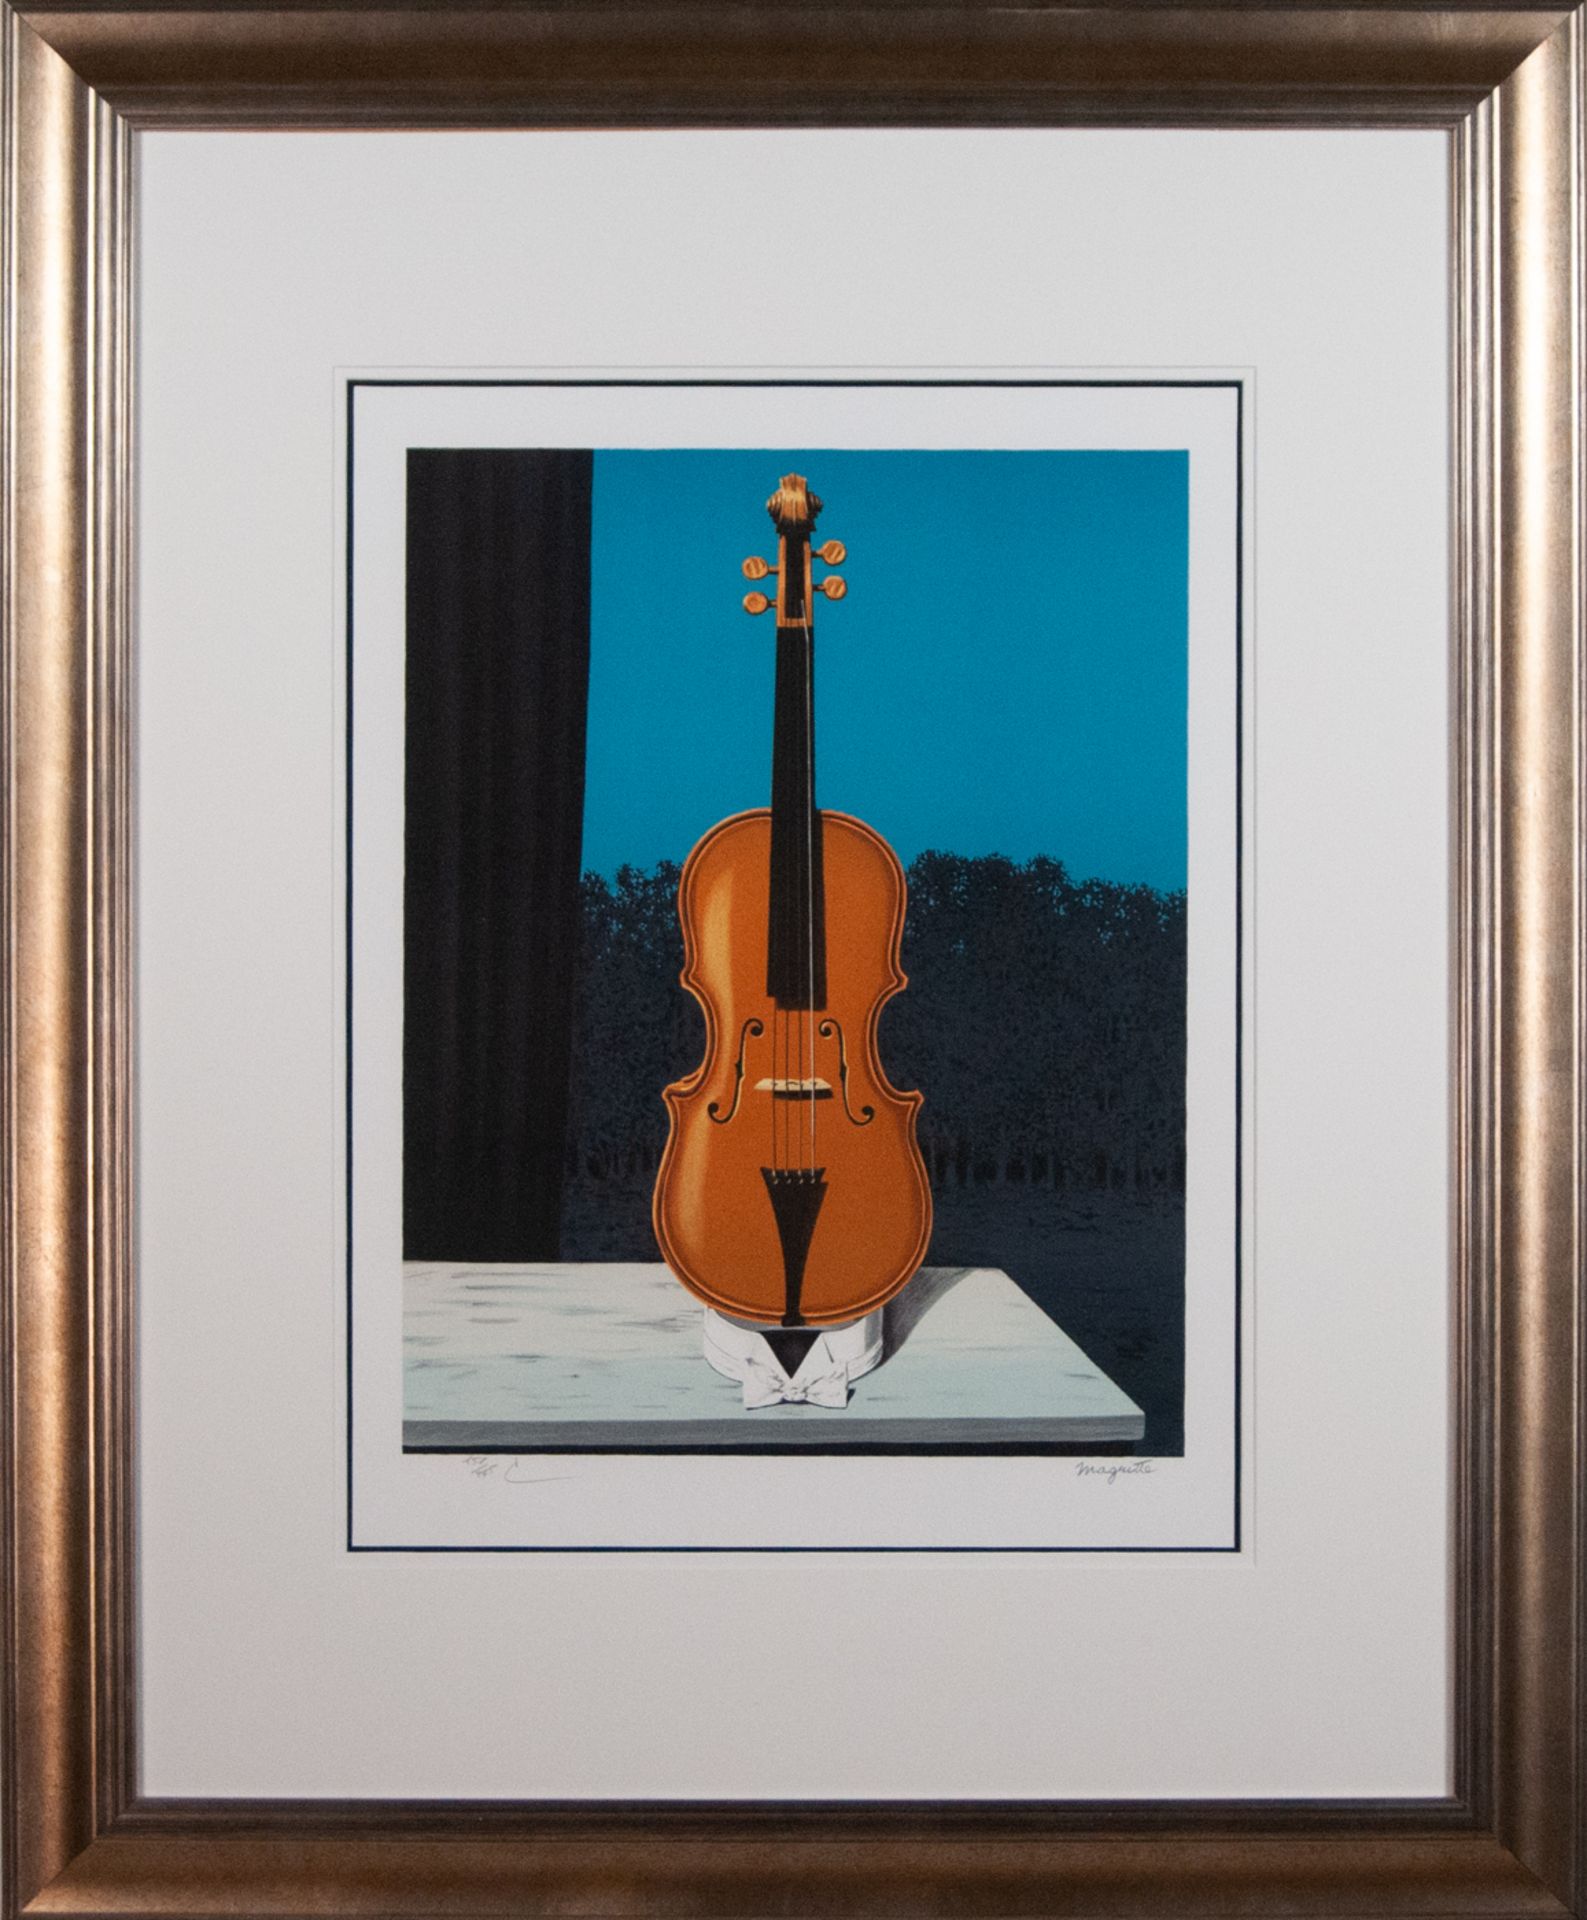 Ren‚ Magritte (1898 - 1967)